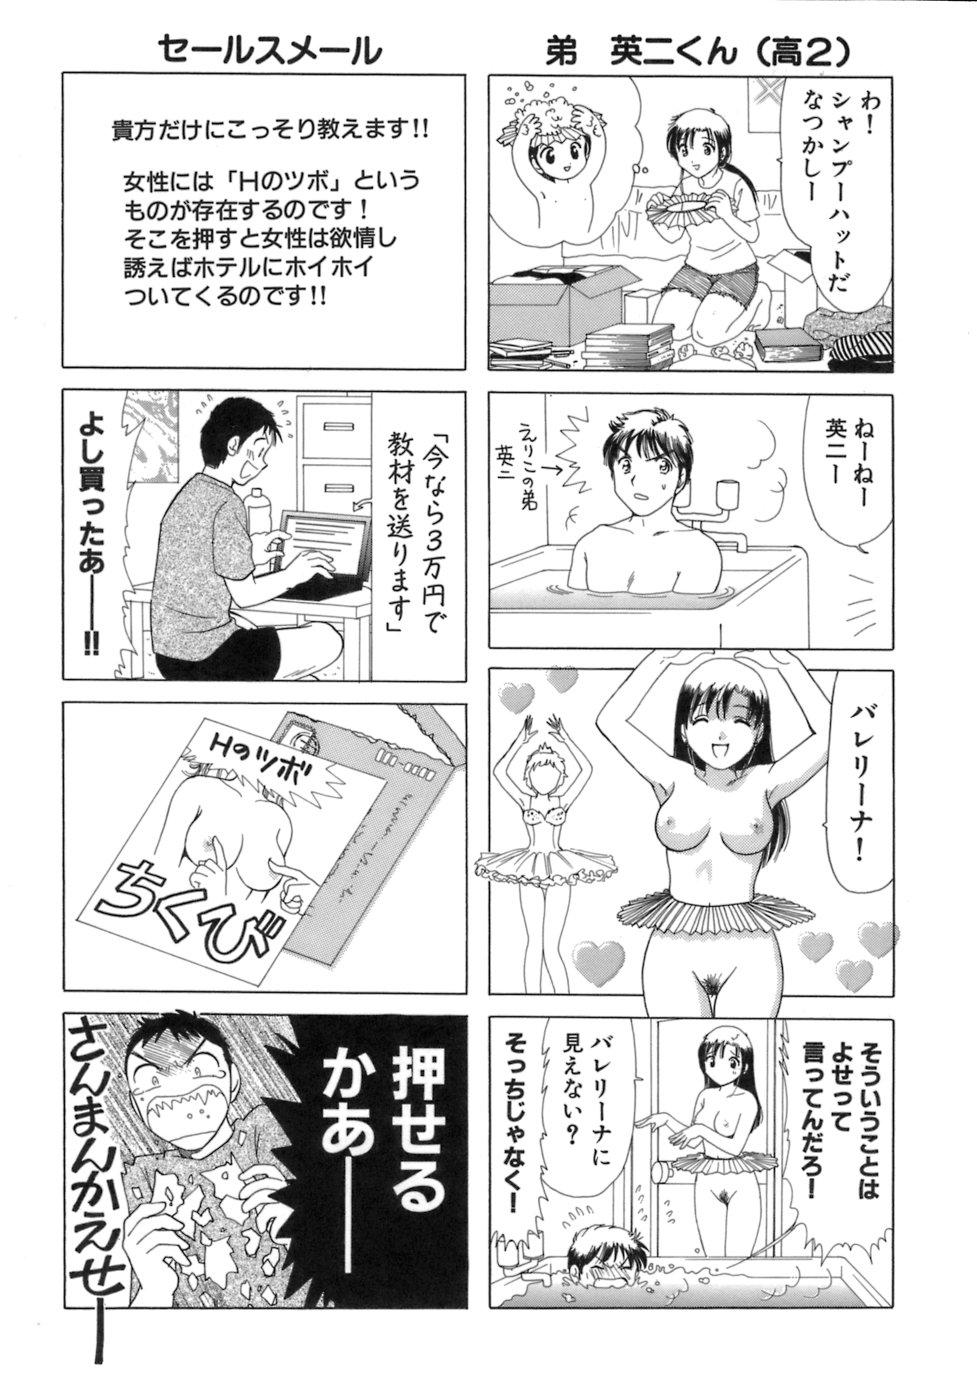 Eriko-kun, Ocha!! Vol.03 135